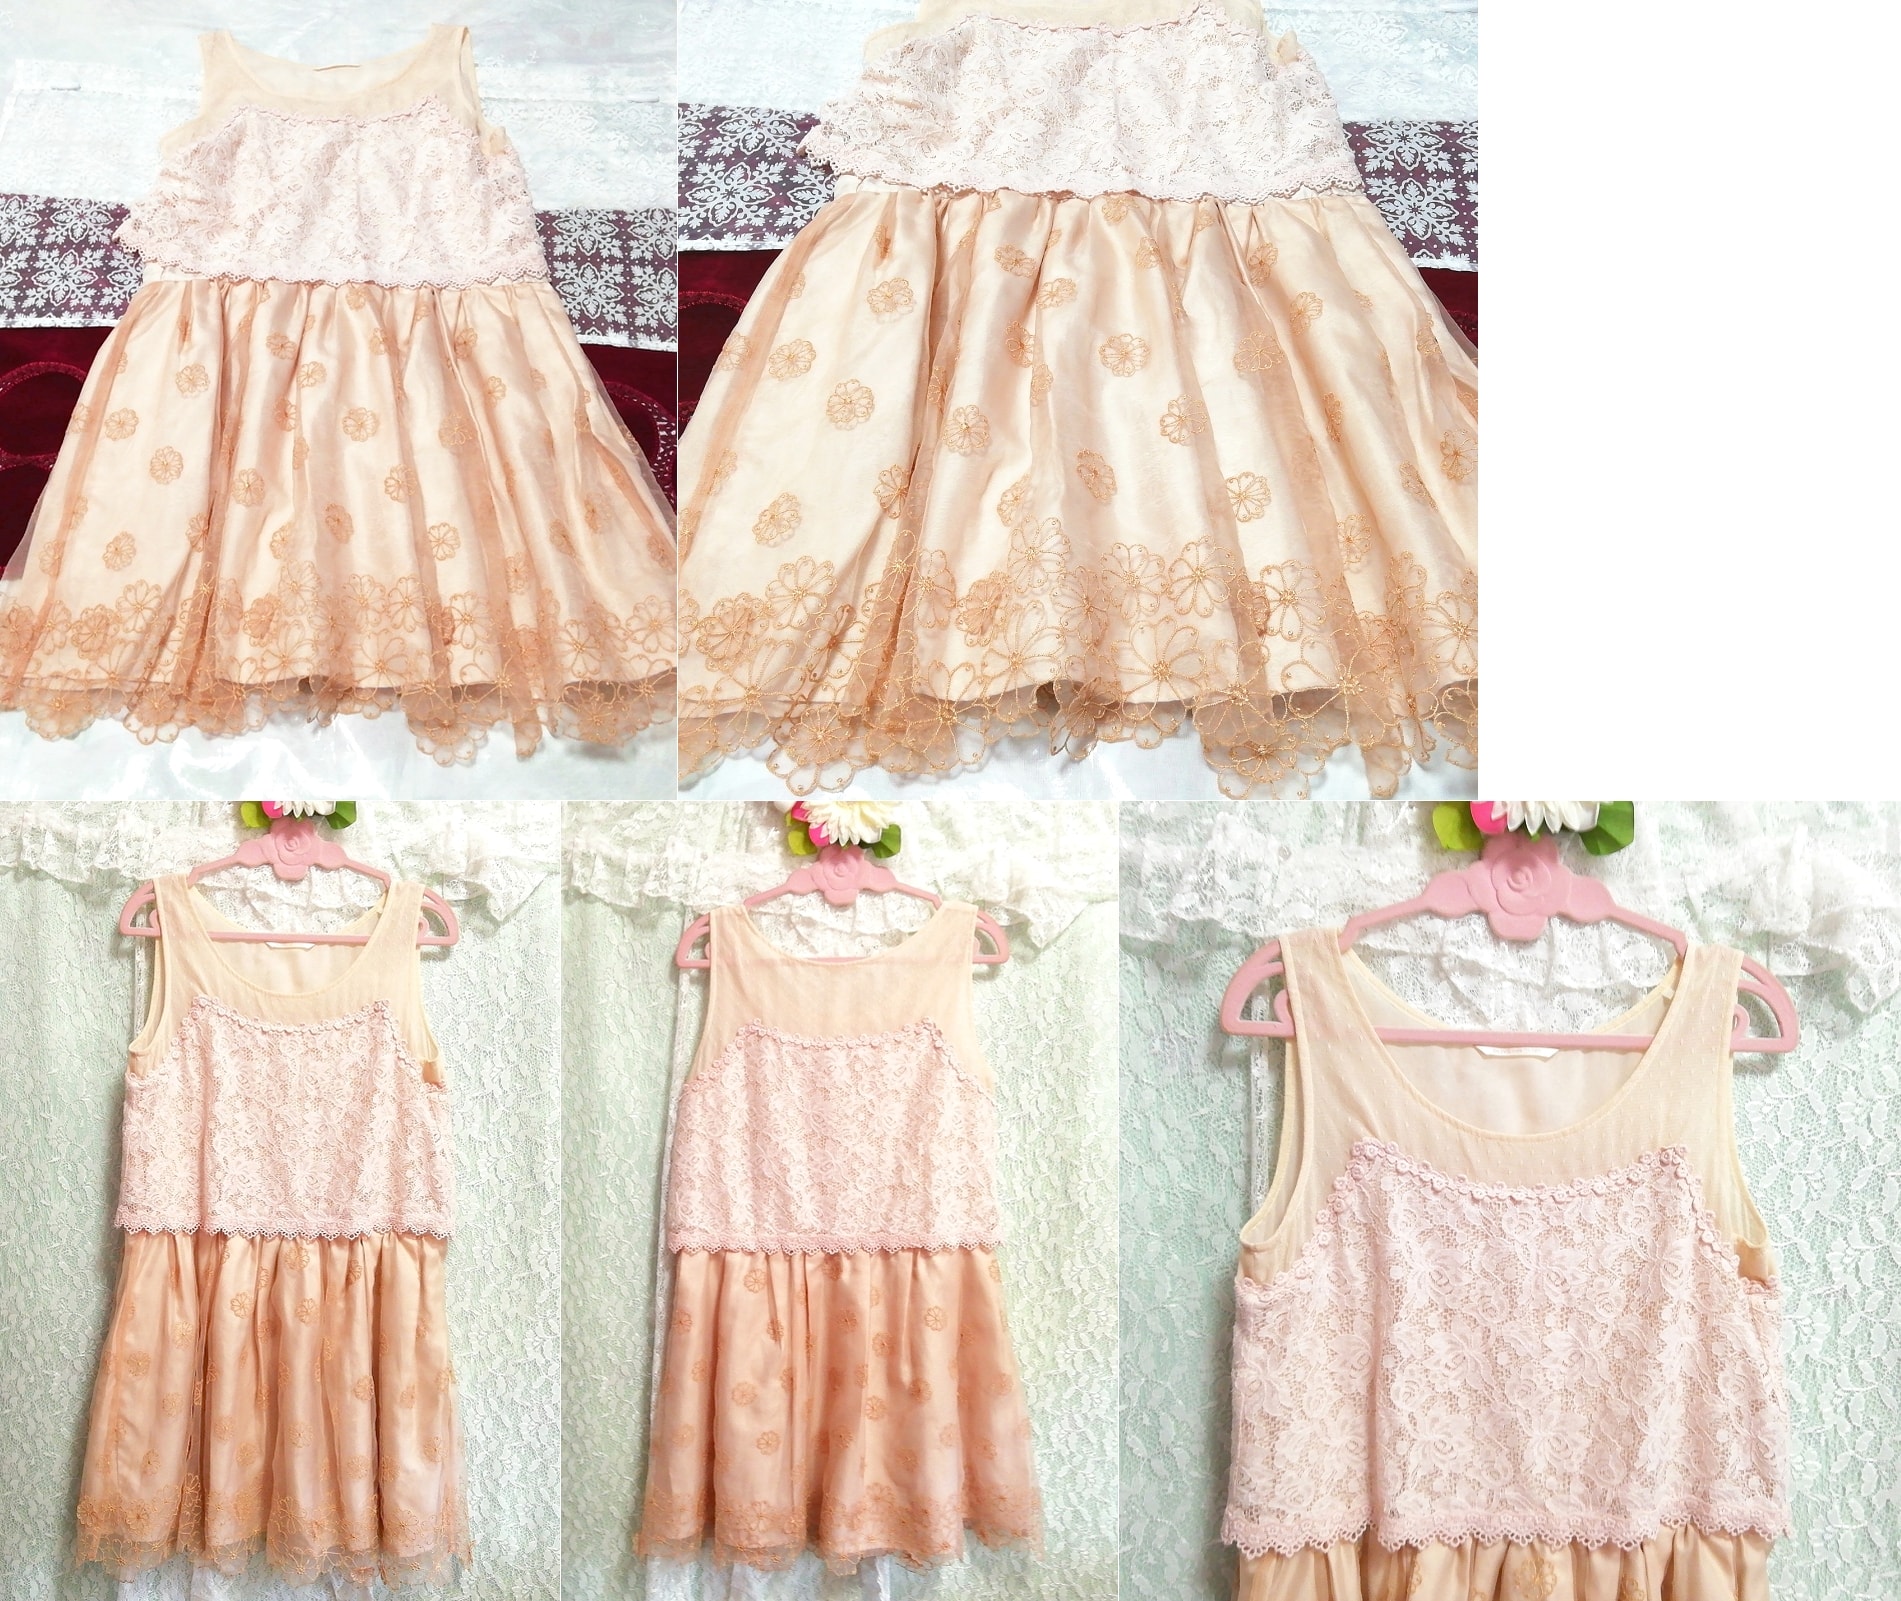 핑크 베이지 꽃무늬 자수 레이스 네글리제 나이트가운 민소매 드레스, 패션, 숙녀 패션, 잠옷, 잠옷